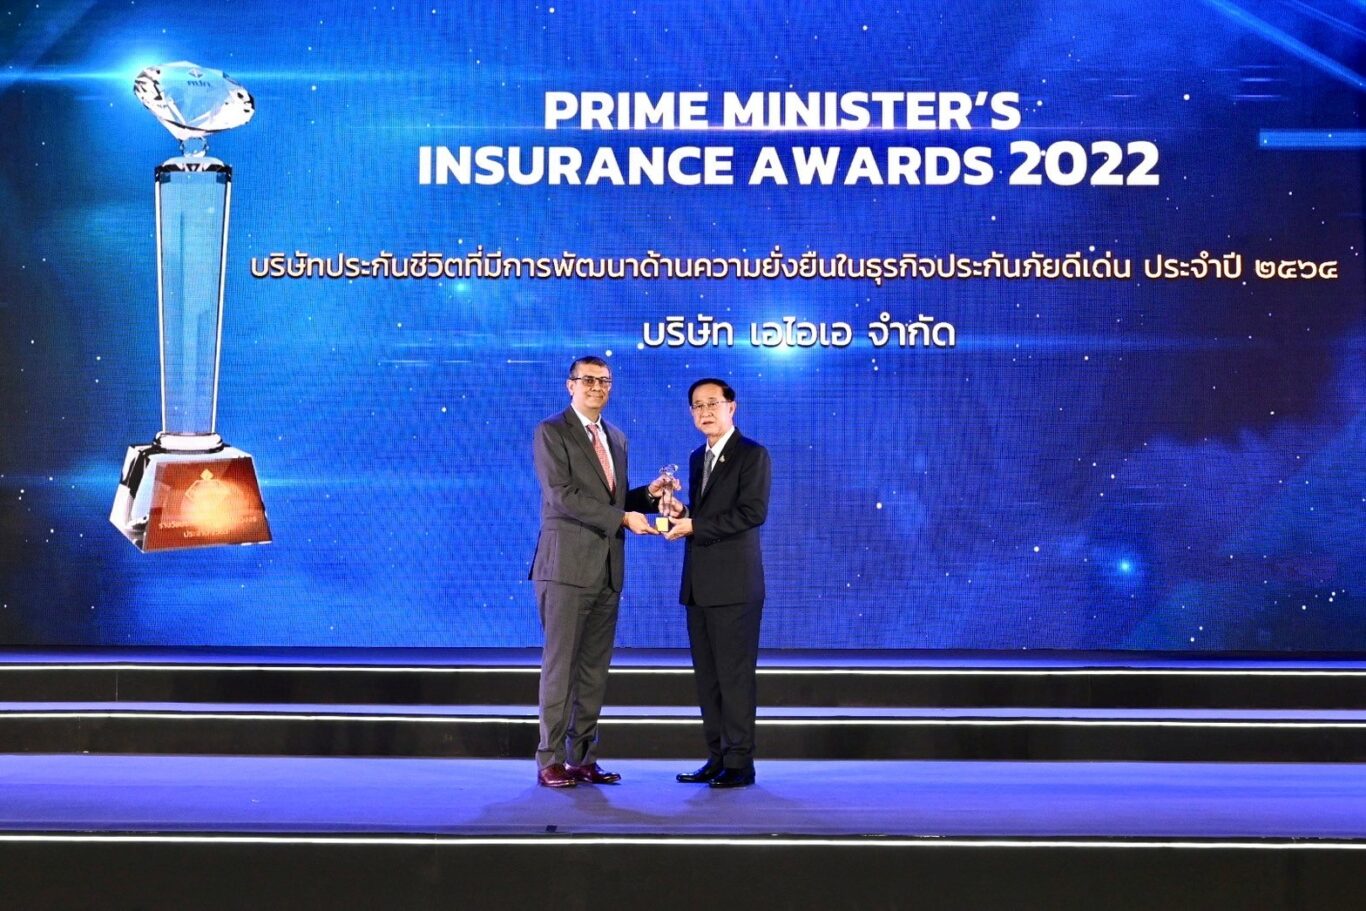 เอไอเอ ประเทศไทย รับรางวัล ‘บริษัทประกันภัยที่มีการพัฒนาด้านความยั่งยืน’ เป็นปีที่ 2 ติดต่อกัน จากงาน Prime Minister’s Insurance Awards ปี 2564